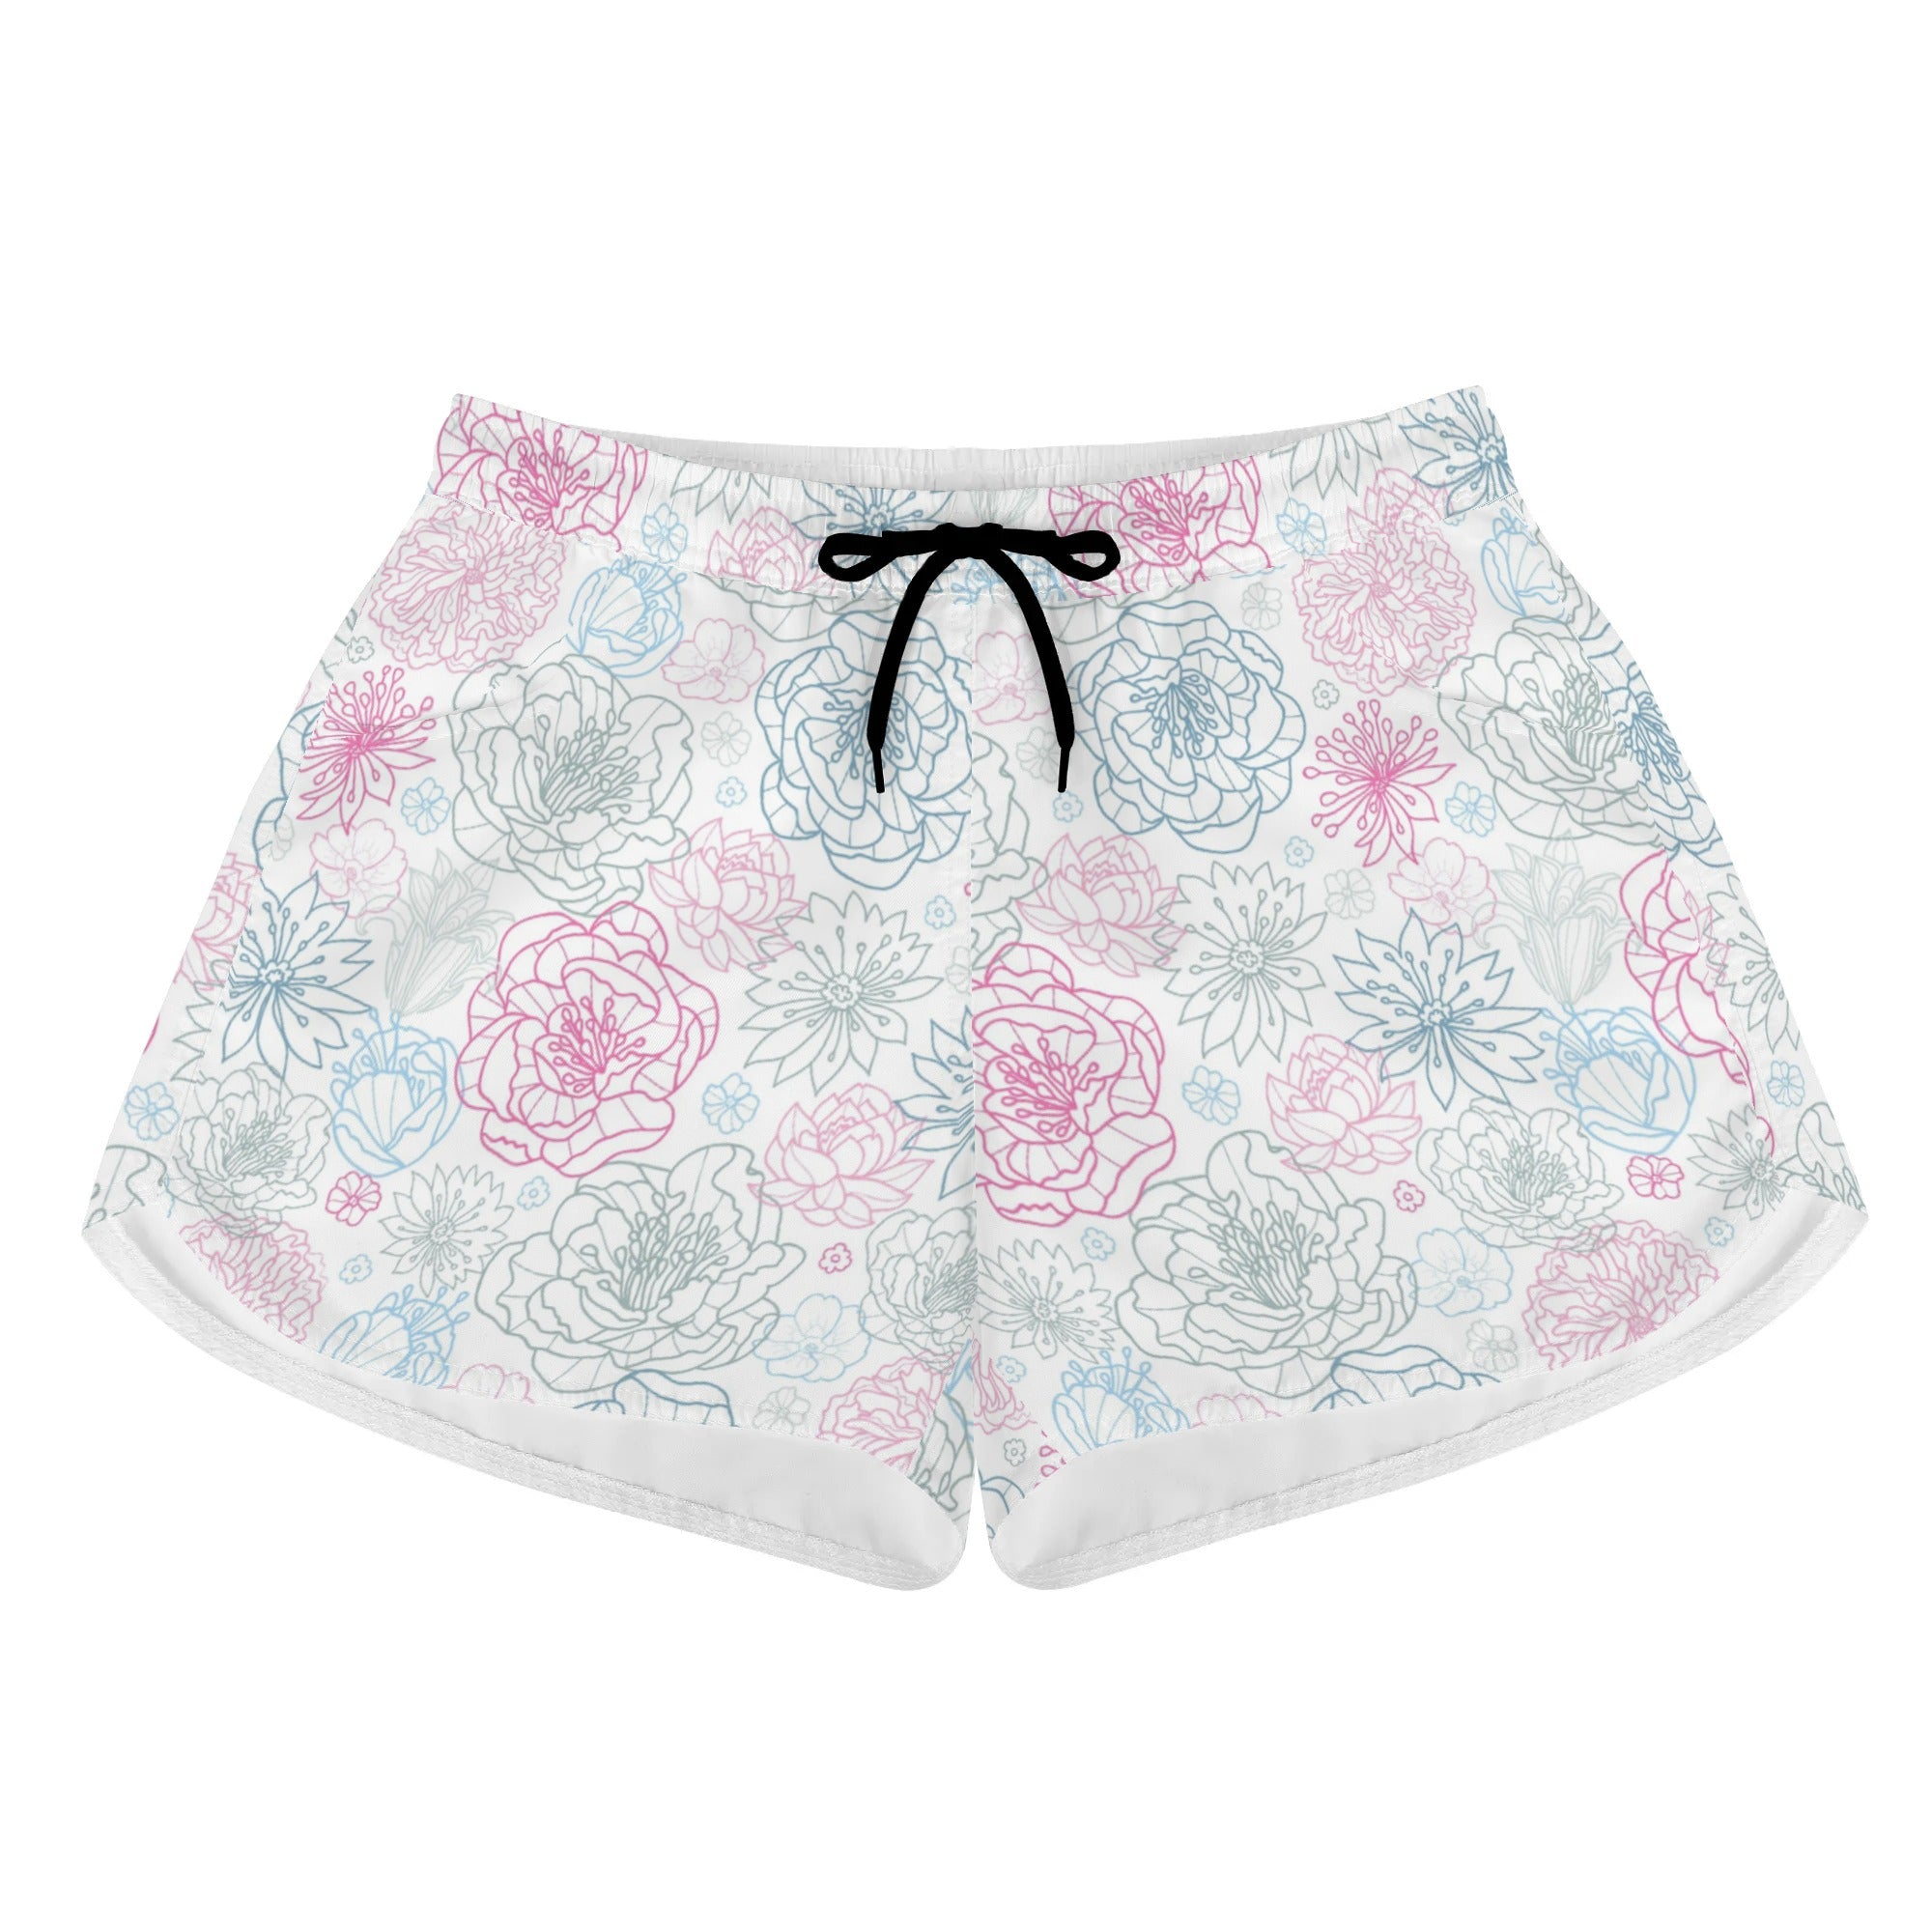 Shorts de playa estampados para mujer - Mezcla floral